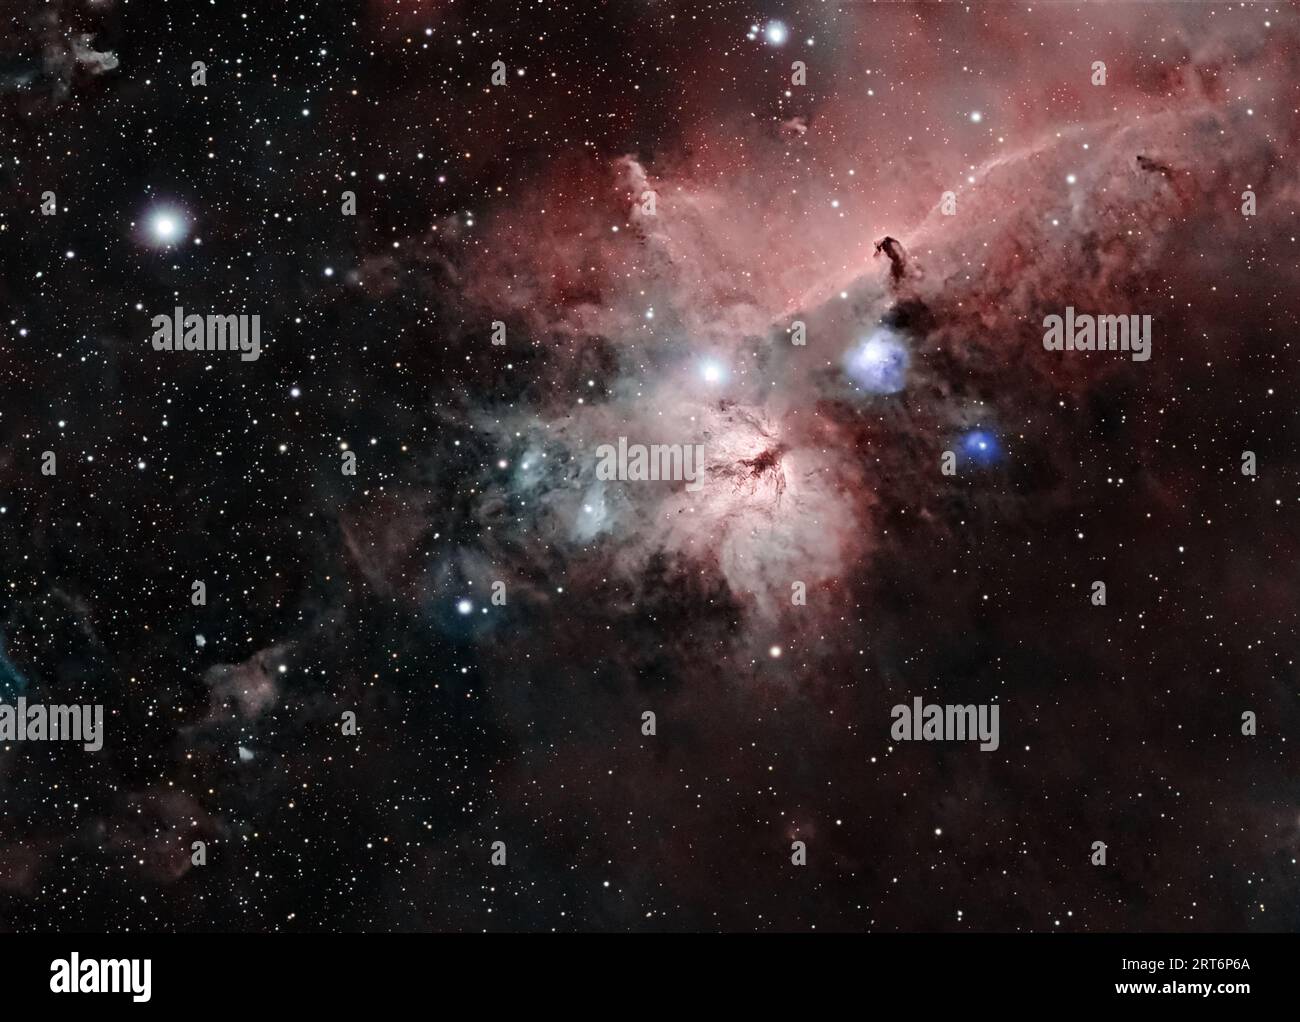 Imbarcati in un viaggio cosmico con Horsehead e Flame Nebulae, un affascinante duo celeste nel complesso delle nubi molecolari di Orion. Foto Stock